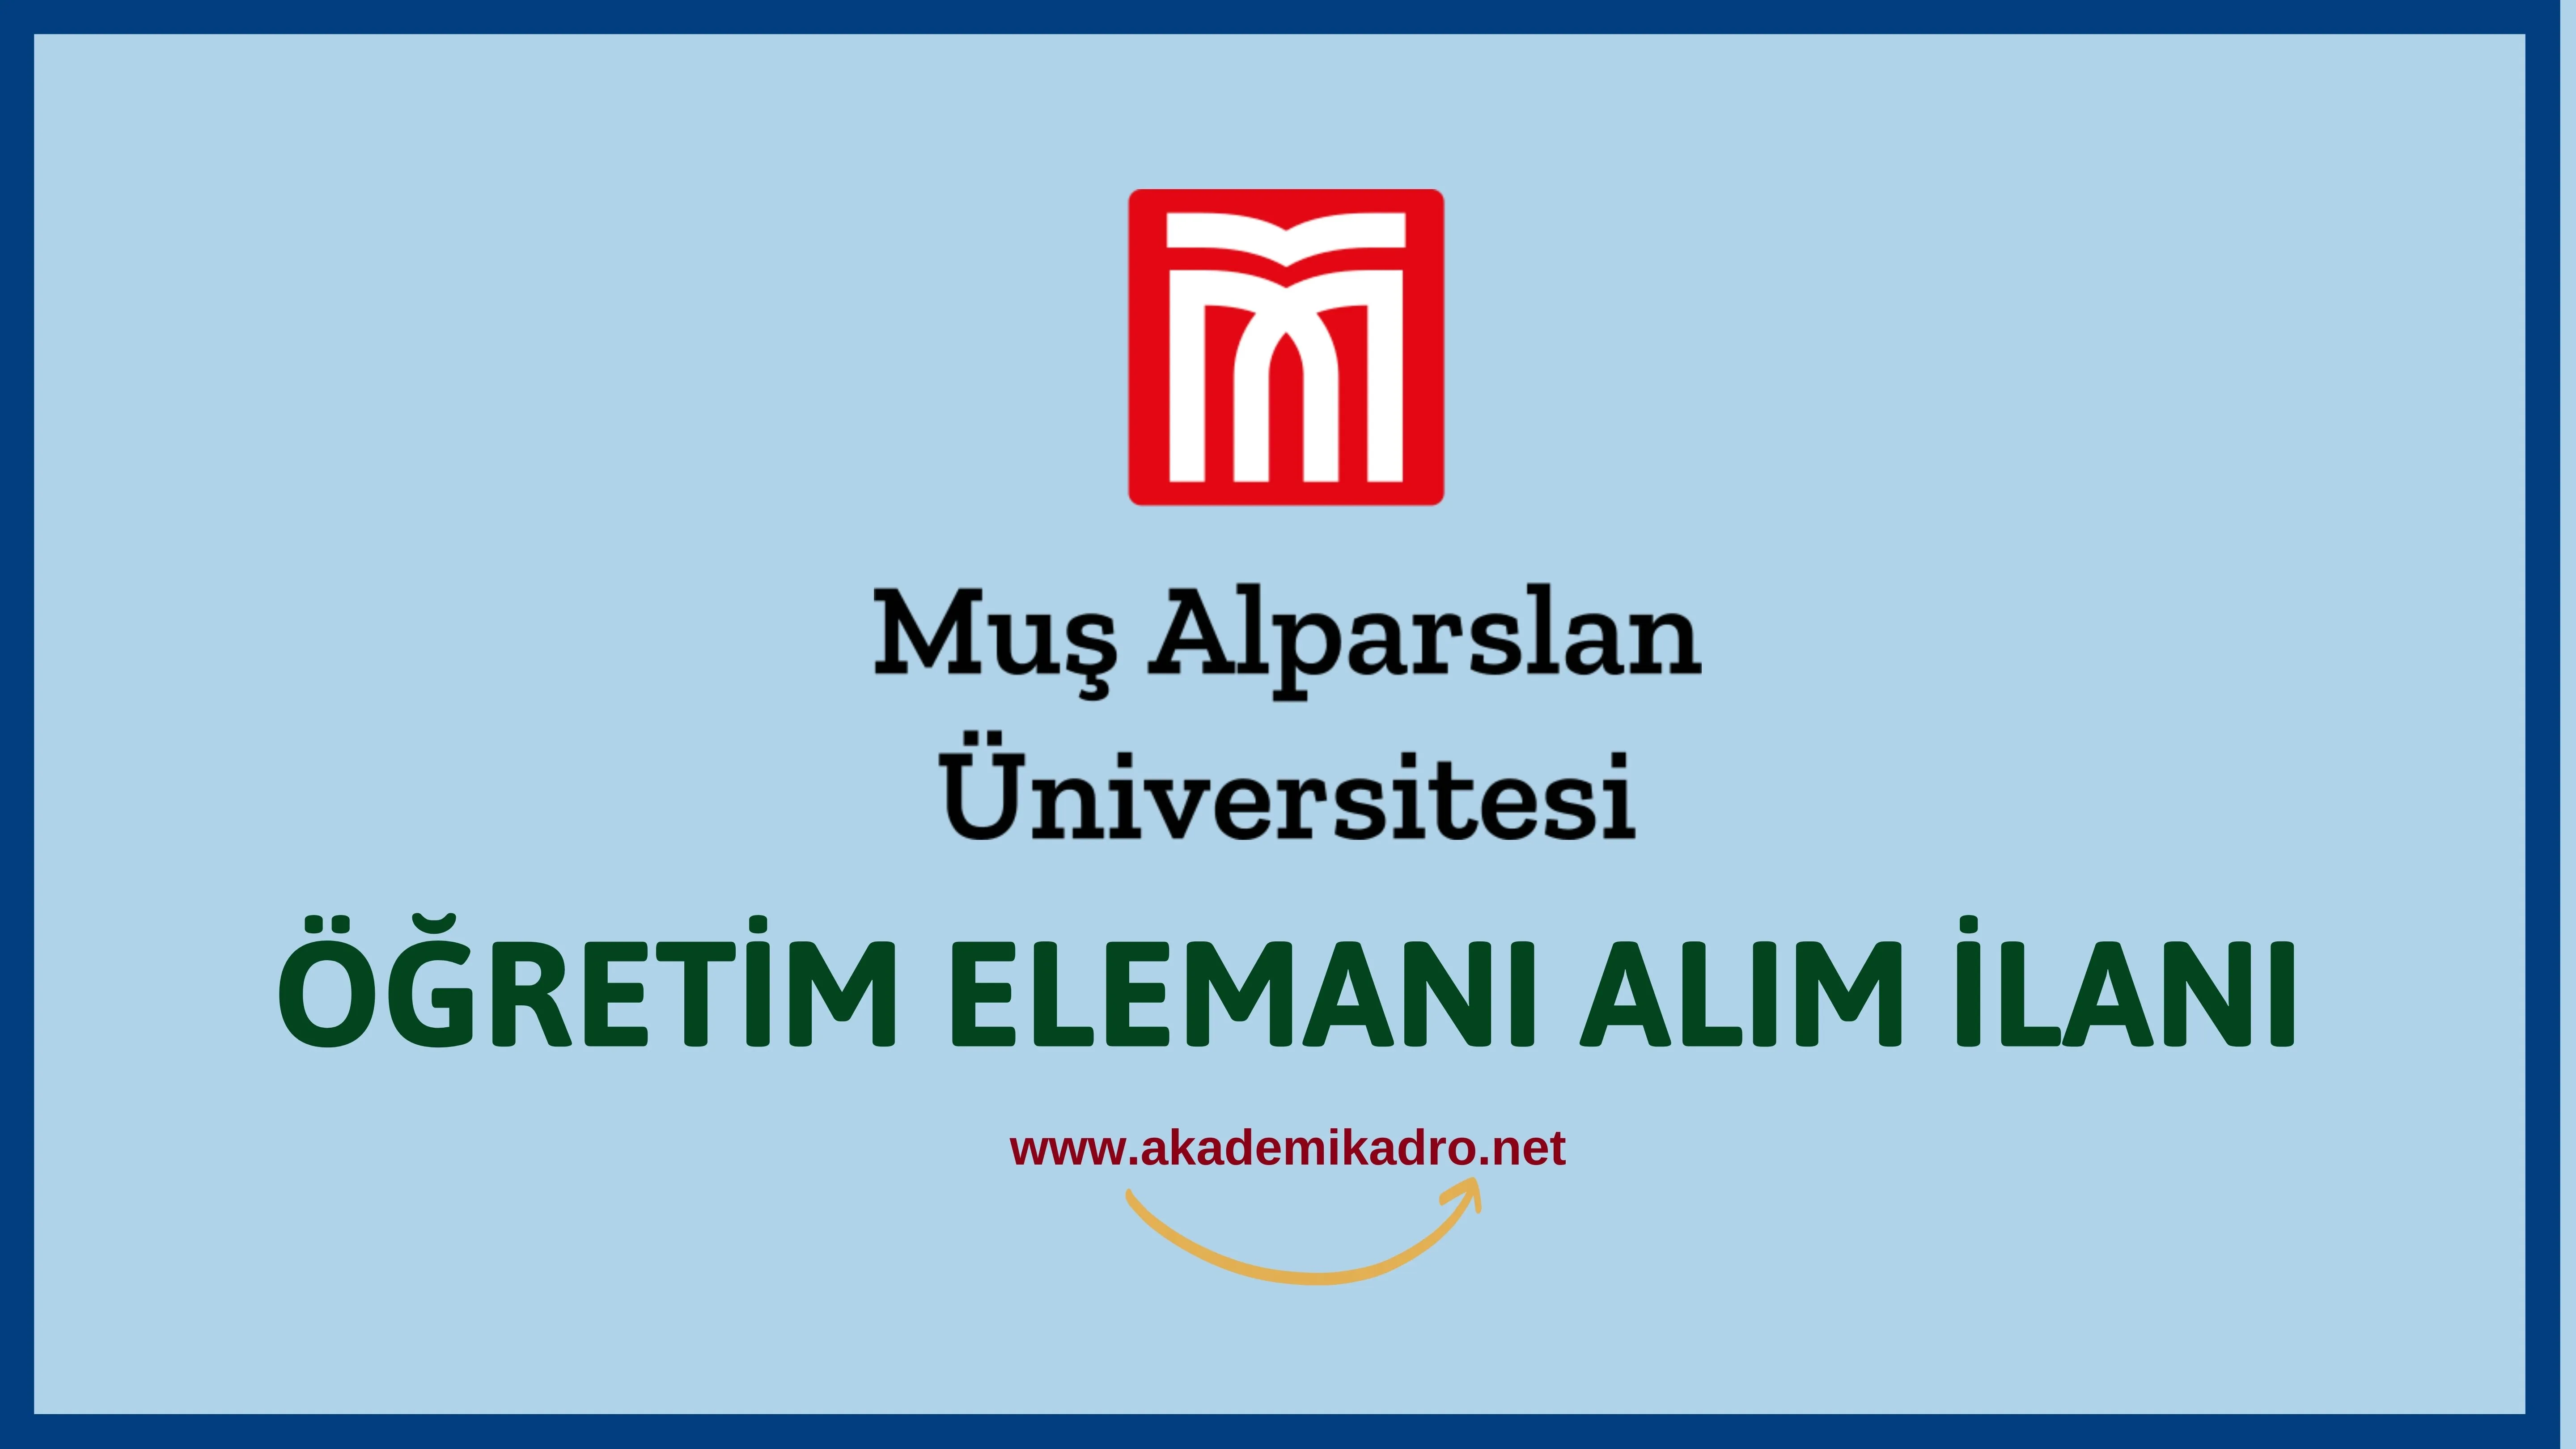 Muş Alparslan Üniversitesi 4 Araştırma görevlisi, 4 Öğretim görevlisi ve birçok alandan 23 Öğretim üyesi alacak. Son başvuru tarihi 10 Ocak 2023.